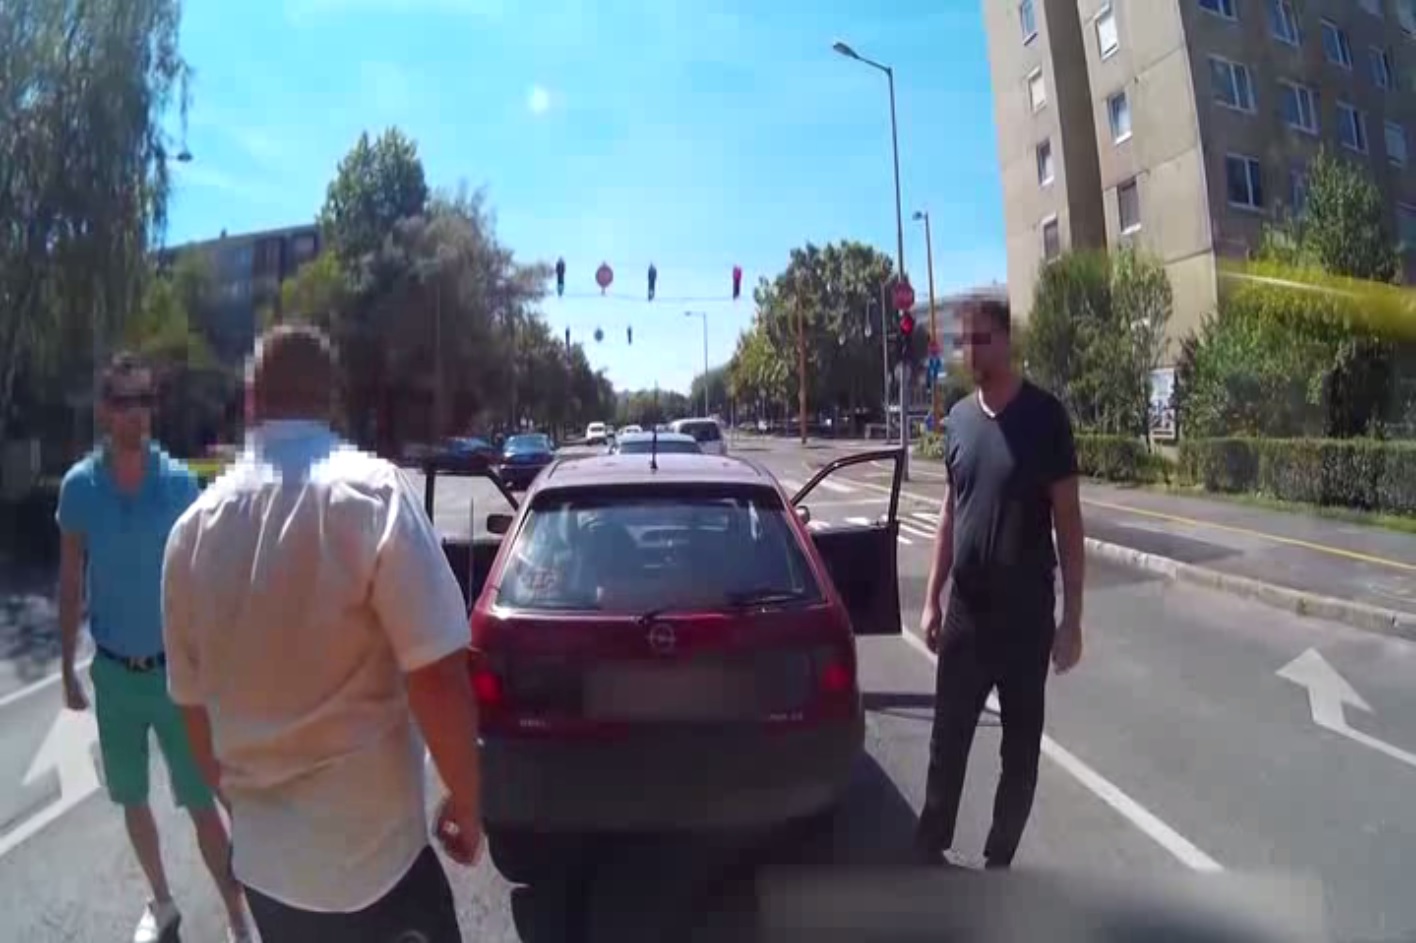 Orosz stílusú road rage-videó Győrből: a buszsofőr kiszállt pampogni a pirosnál, erre a három utas összeverekedett vele